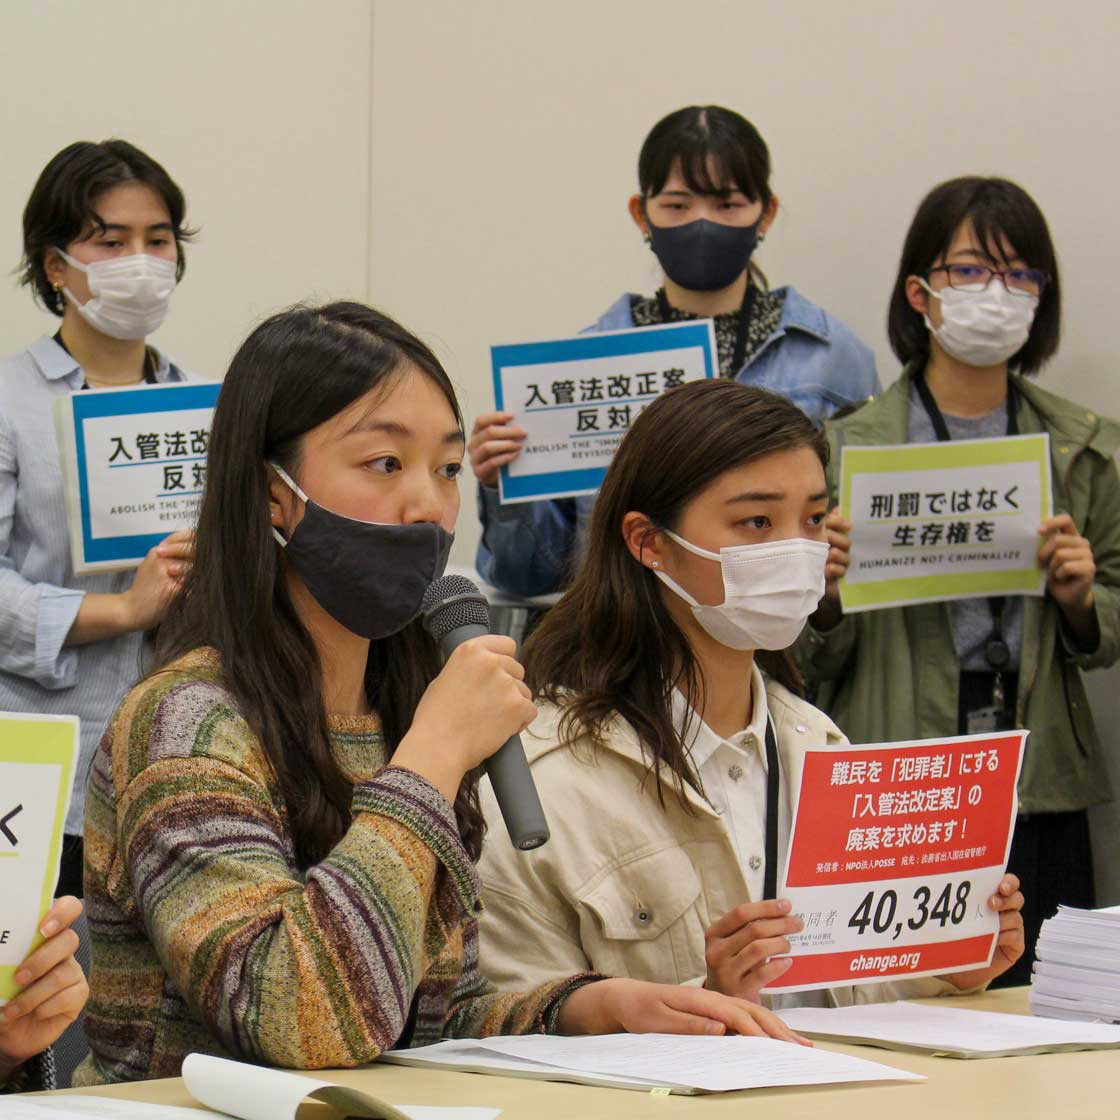 Кампания протеста направлена против реформы иммиграционного законодательства Японии